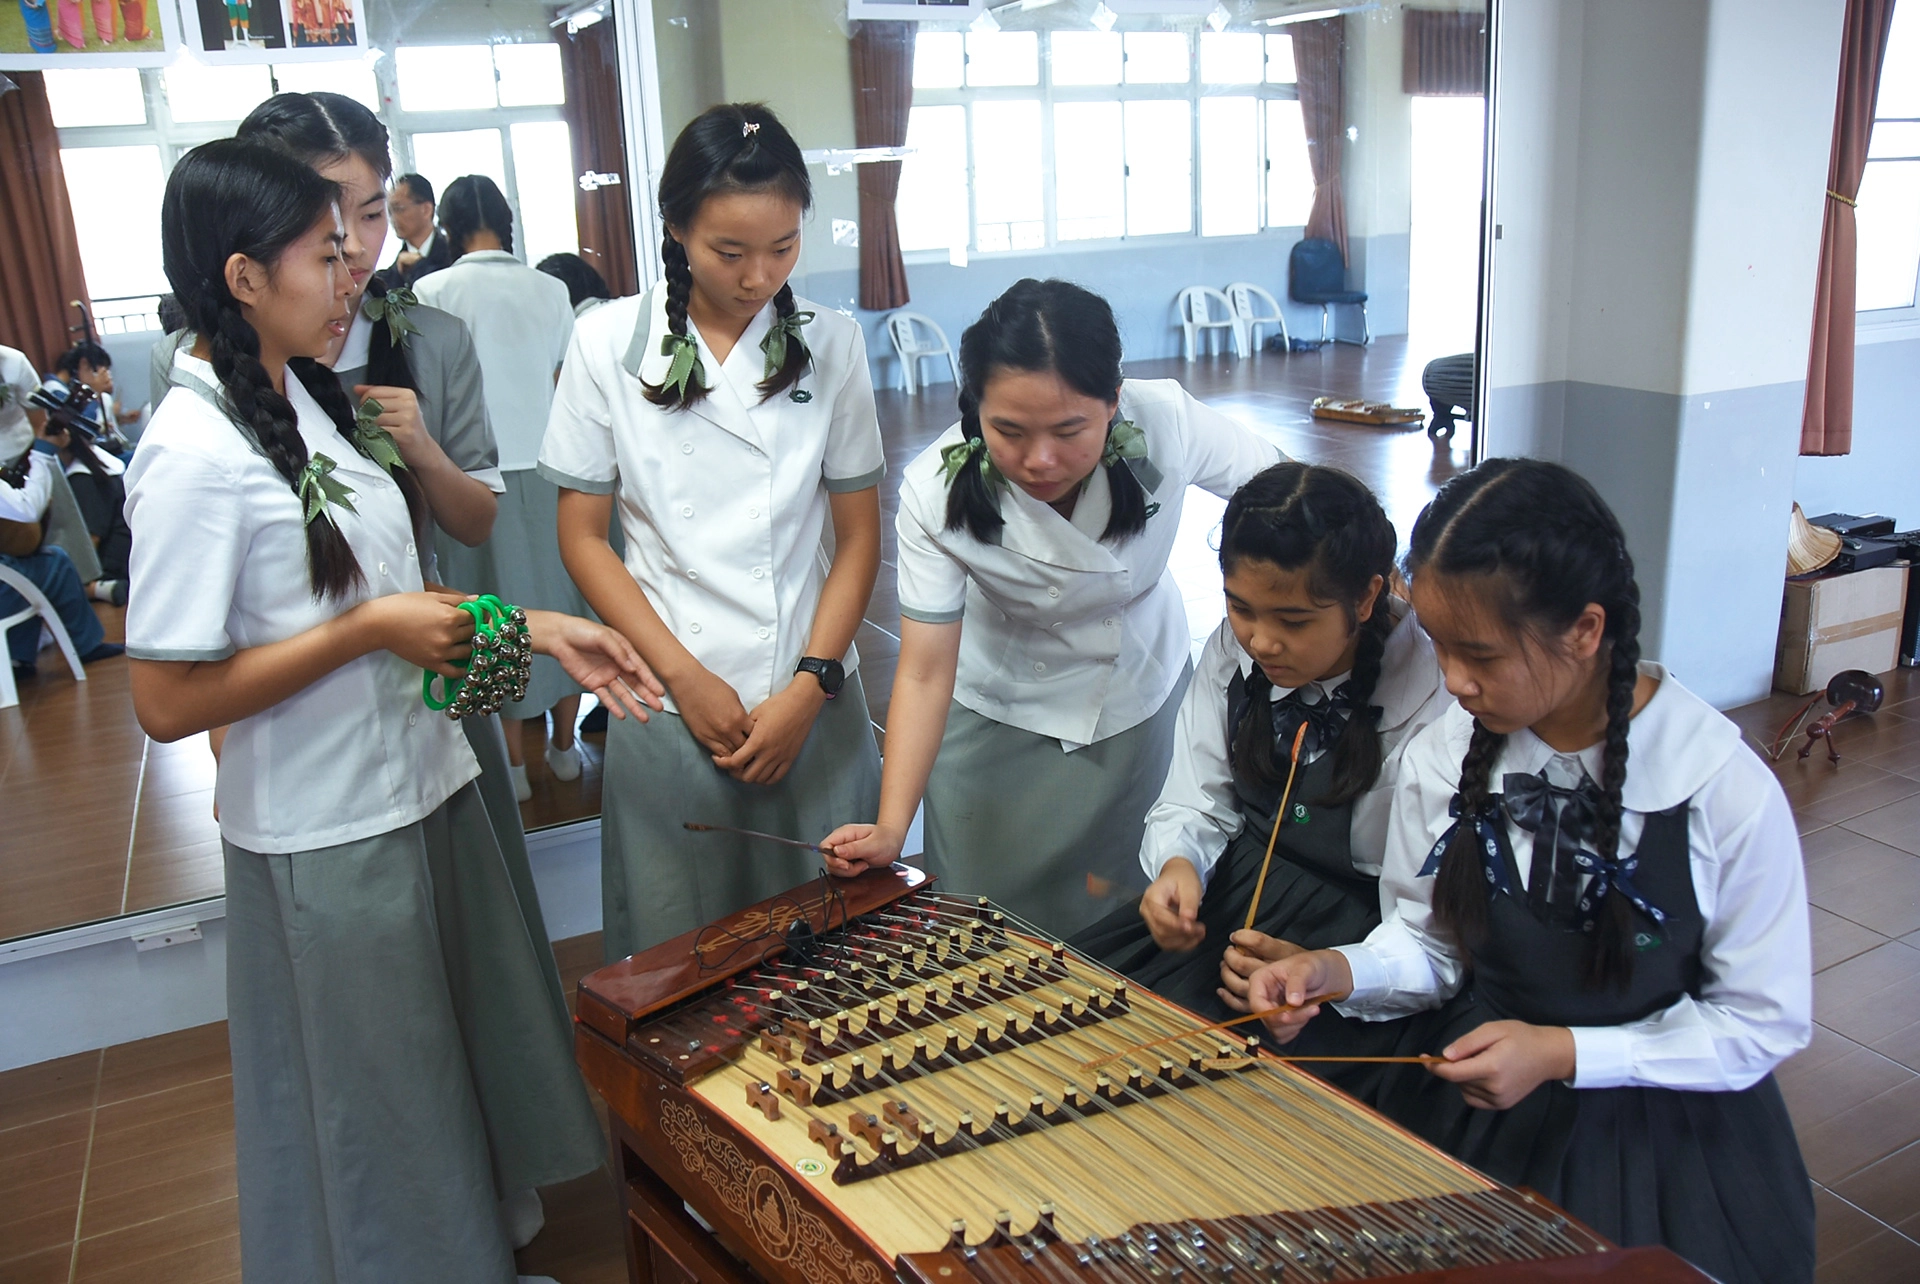 清邁慈濟學校師生與慈濟科技大學師生交流彼此的樂器。